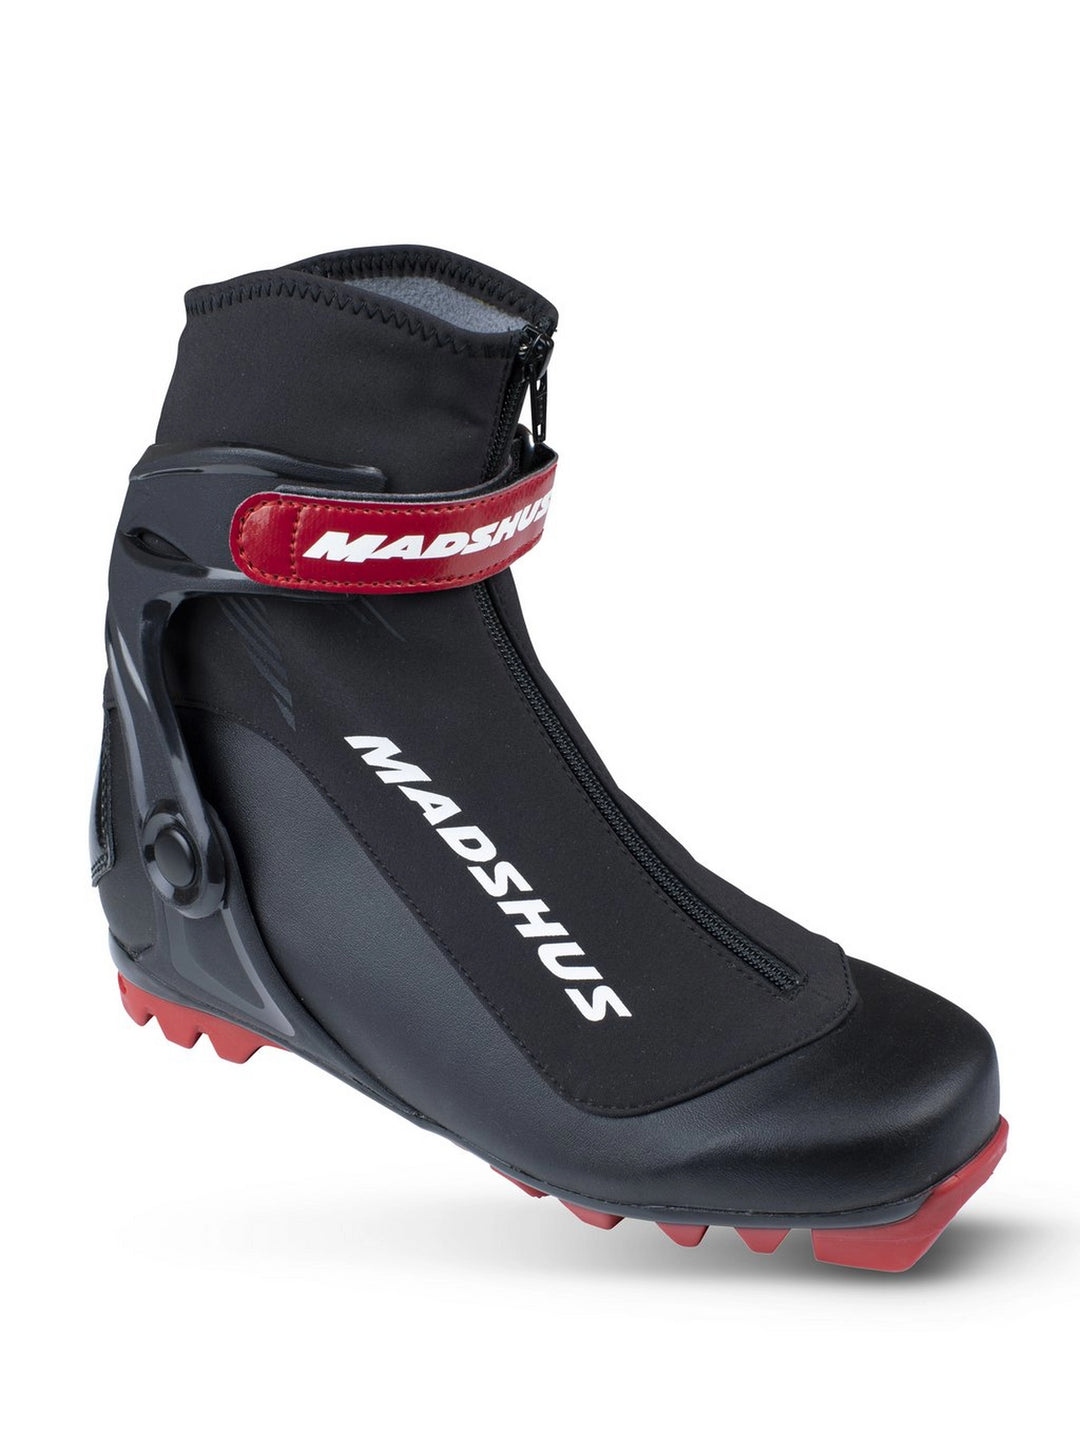 Chaussures de ski Madshus Endurace S pour hommes